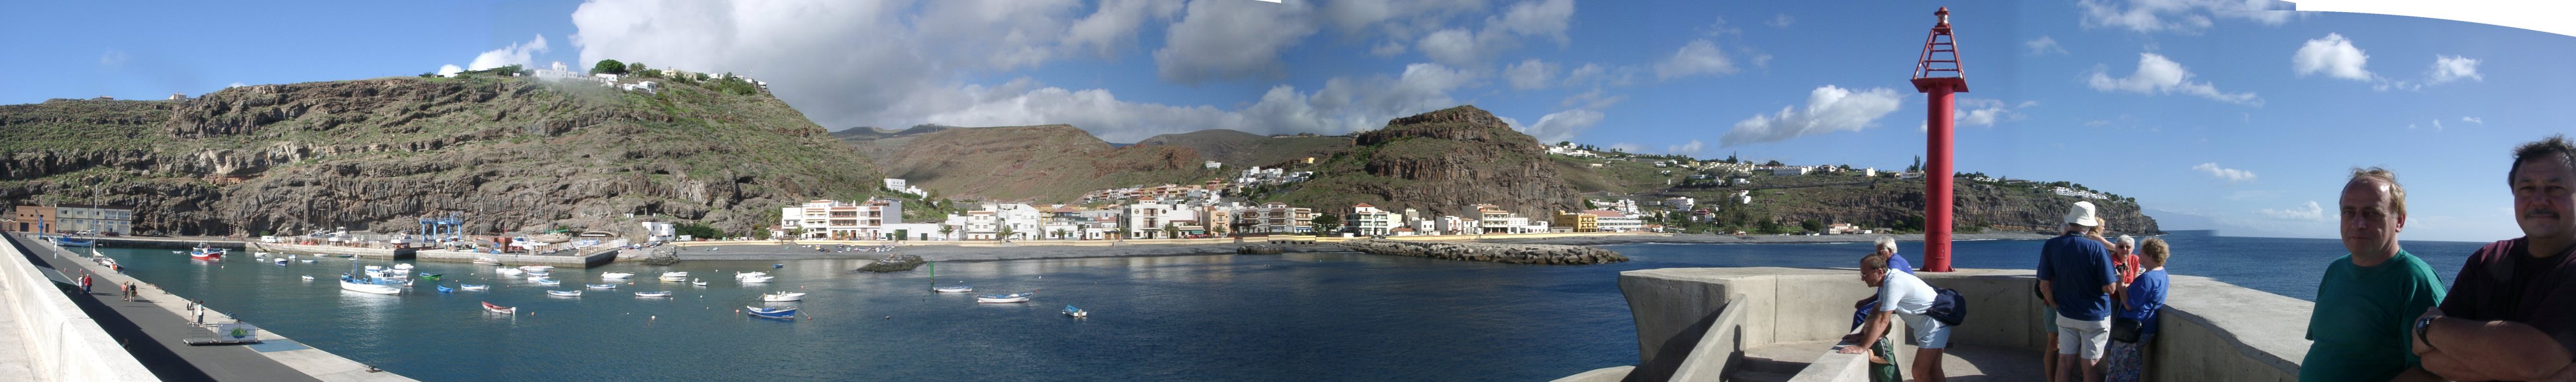 Playa Santiago/Hafenmole - Panorama von Westen nach Osten